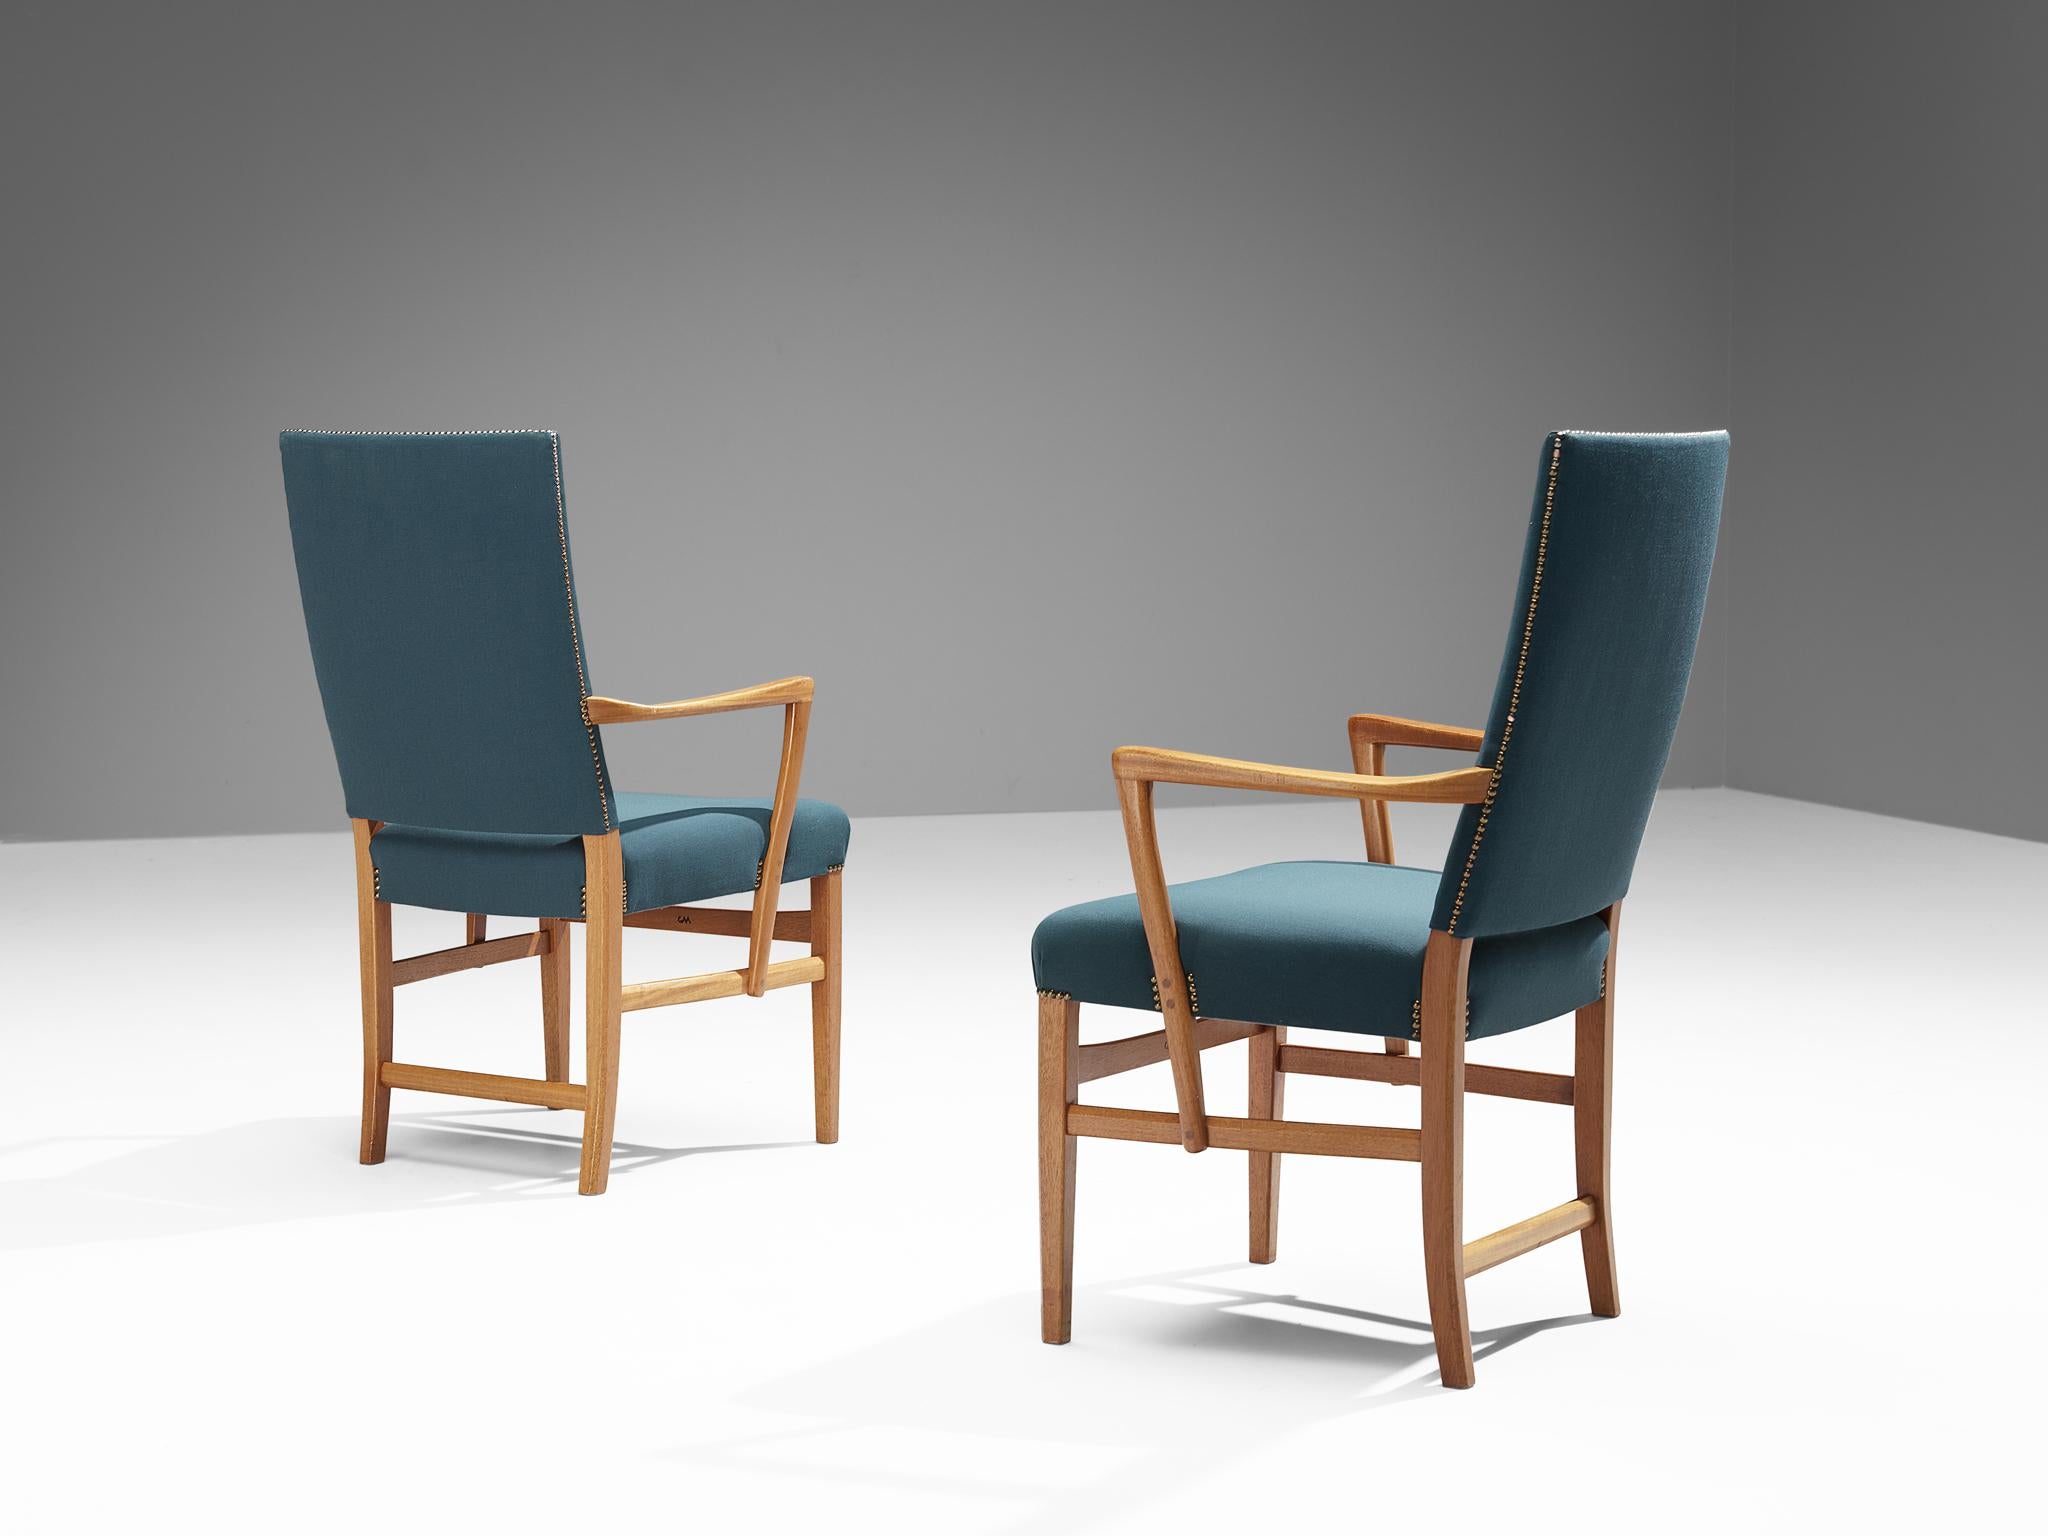 Carl Malmsten, paire de chaises de salle à manger, teck, tissu, laiton, Suède, vers 1970

Ces fauteuils à haut dossier sont conçus par le designer suédois Carl Malmsten (1888-1972). Ces élégants fauteuils sont un excellent exemple de l'idéologie du